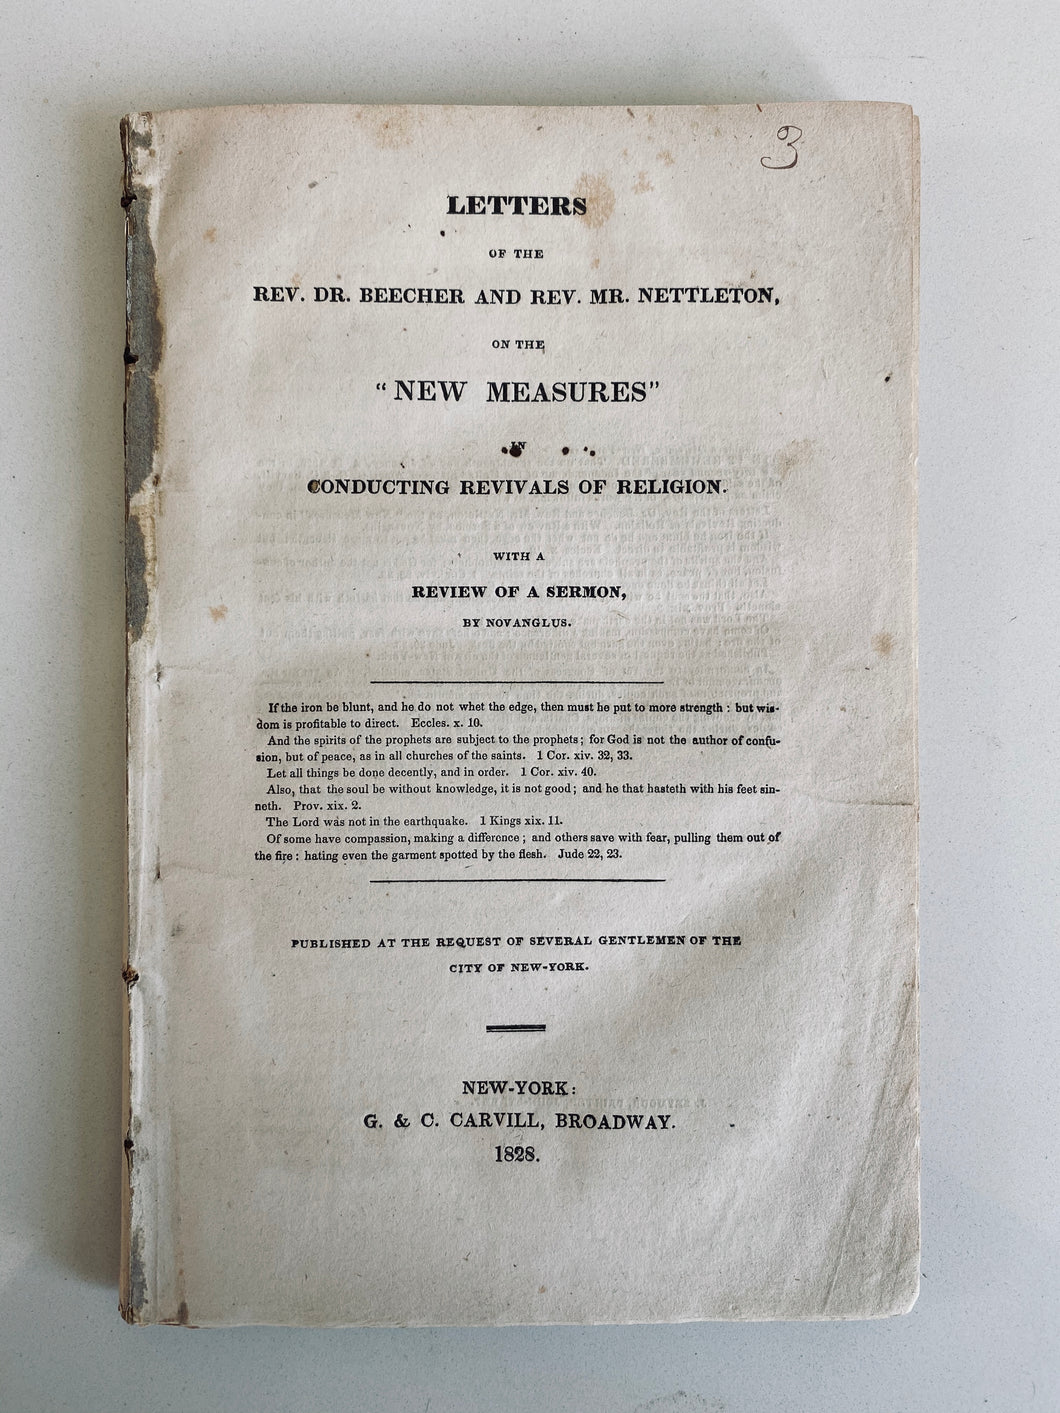 1828 ASAHEL NETTLETON. Letters on New Measure Revivals of Charles Finney, etc. Very Rare